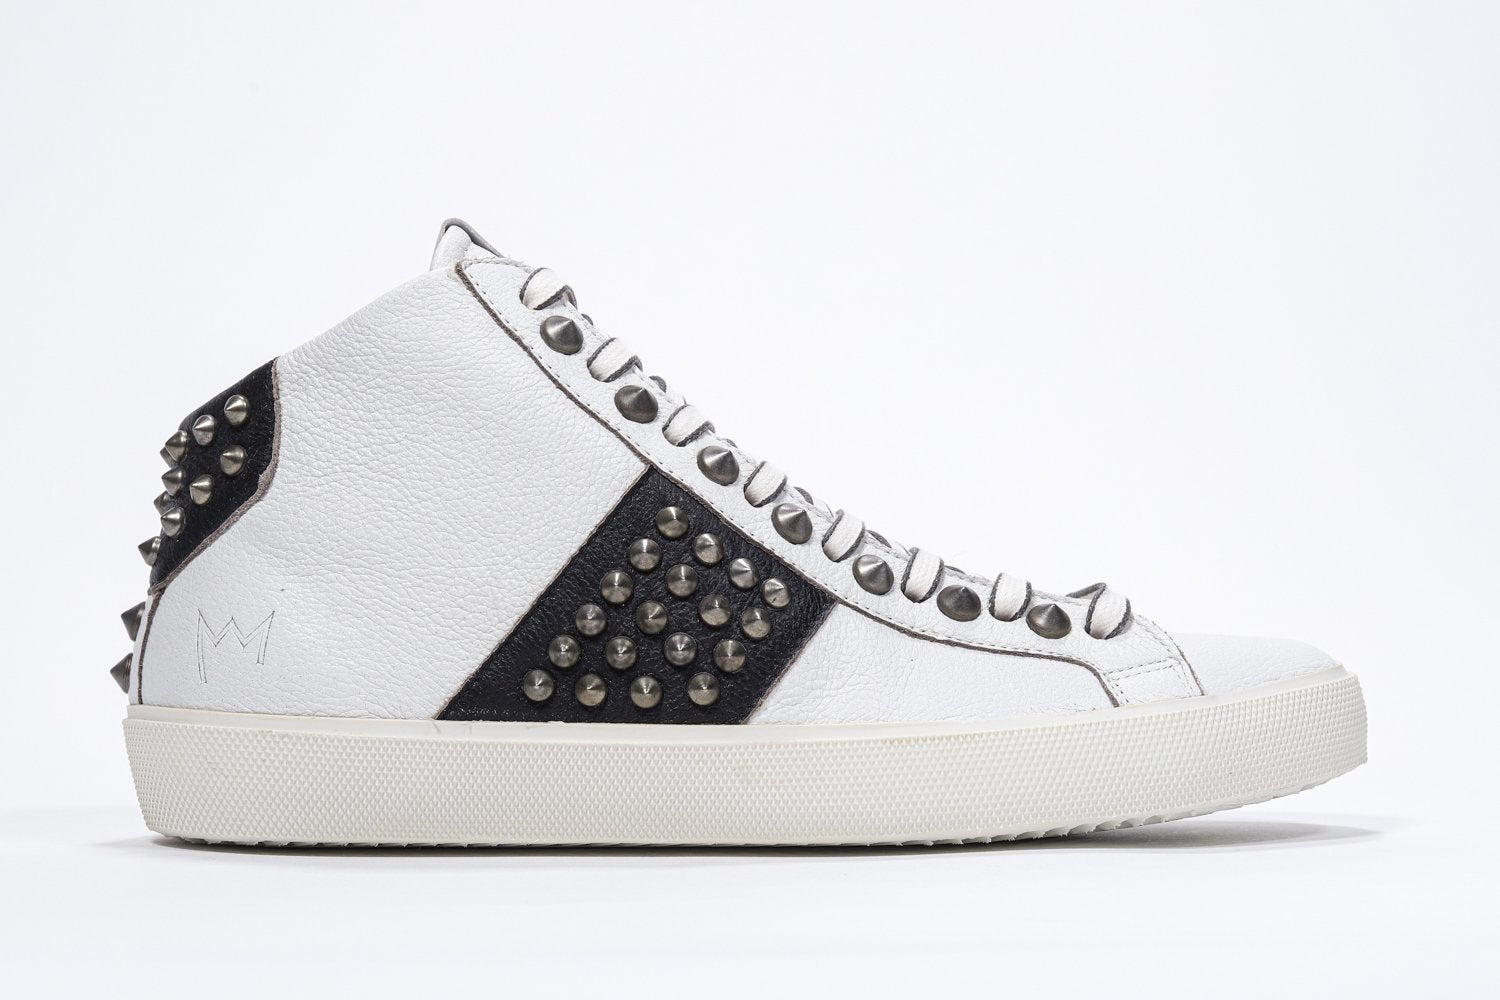 Profilo laterale di mid top bianco e nero sneaker. Tomaia in pelle con borchie, zip interna e suola in gomma vintage.